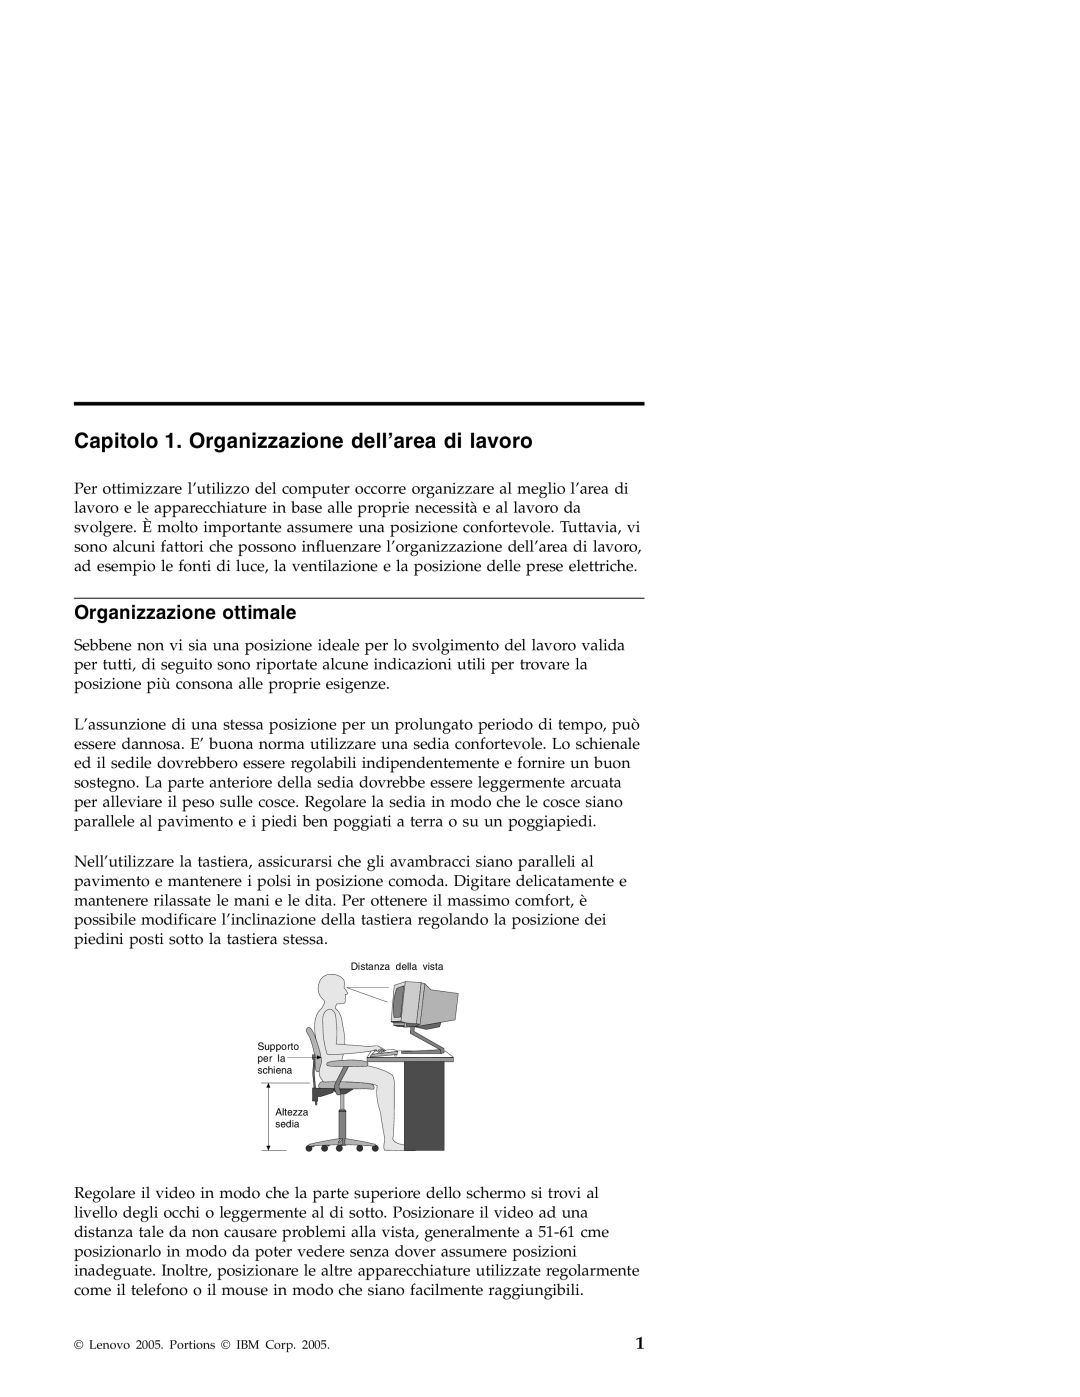 Lenovo 3000 SERIE J manual Capitolo 1. Organizzazione dell’area di lavoro, Organizzazione ottimale 